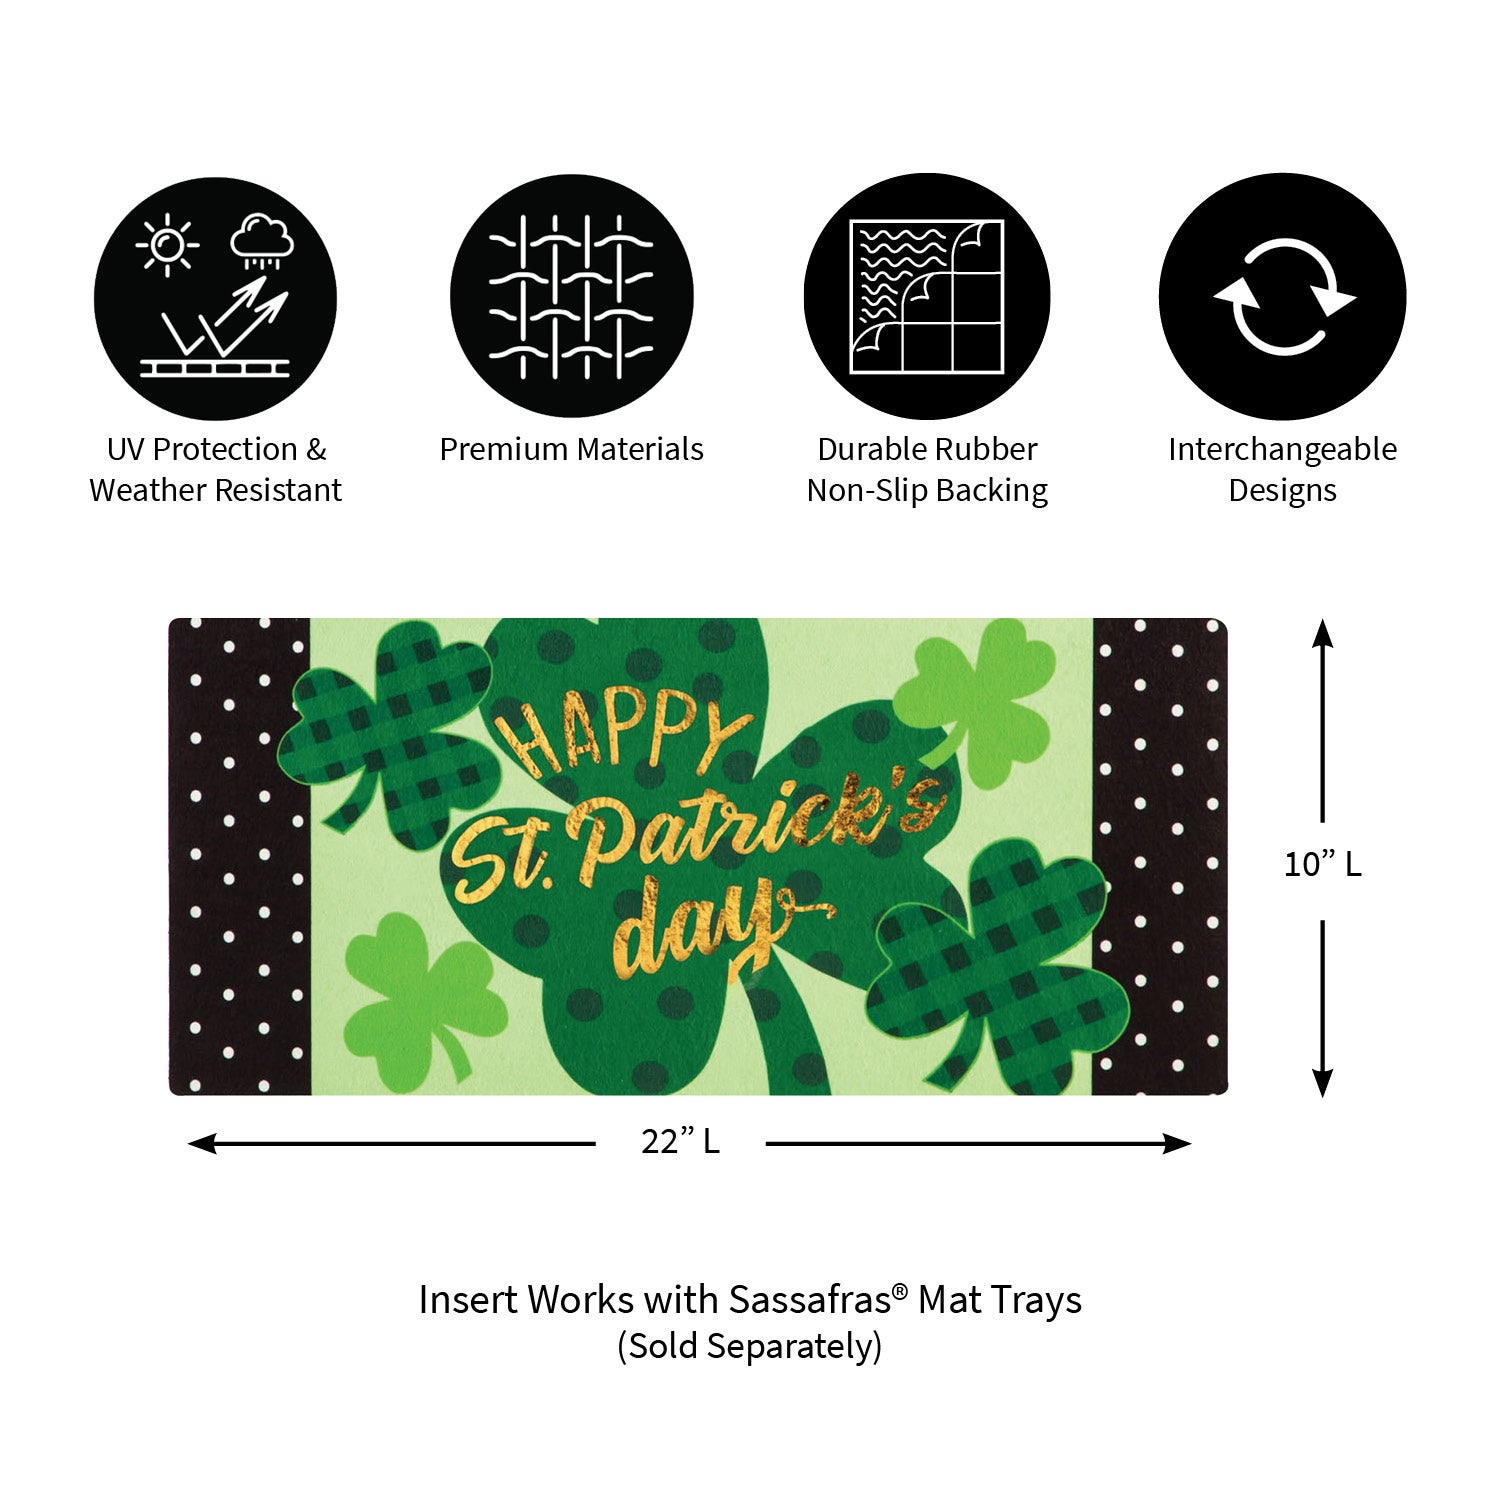 St. Patrick's Day Shamrocks Sassafras Switch Mat, 22" x 10"